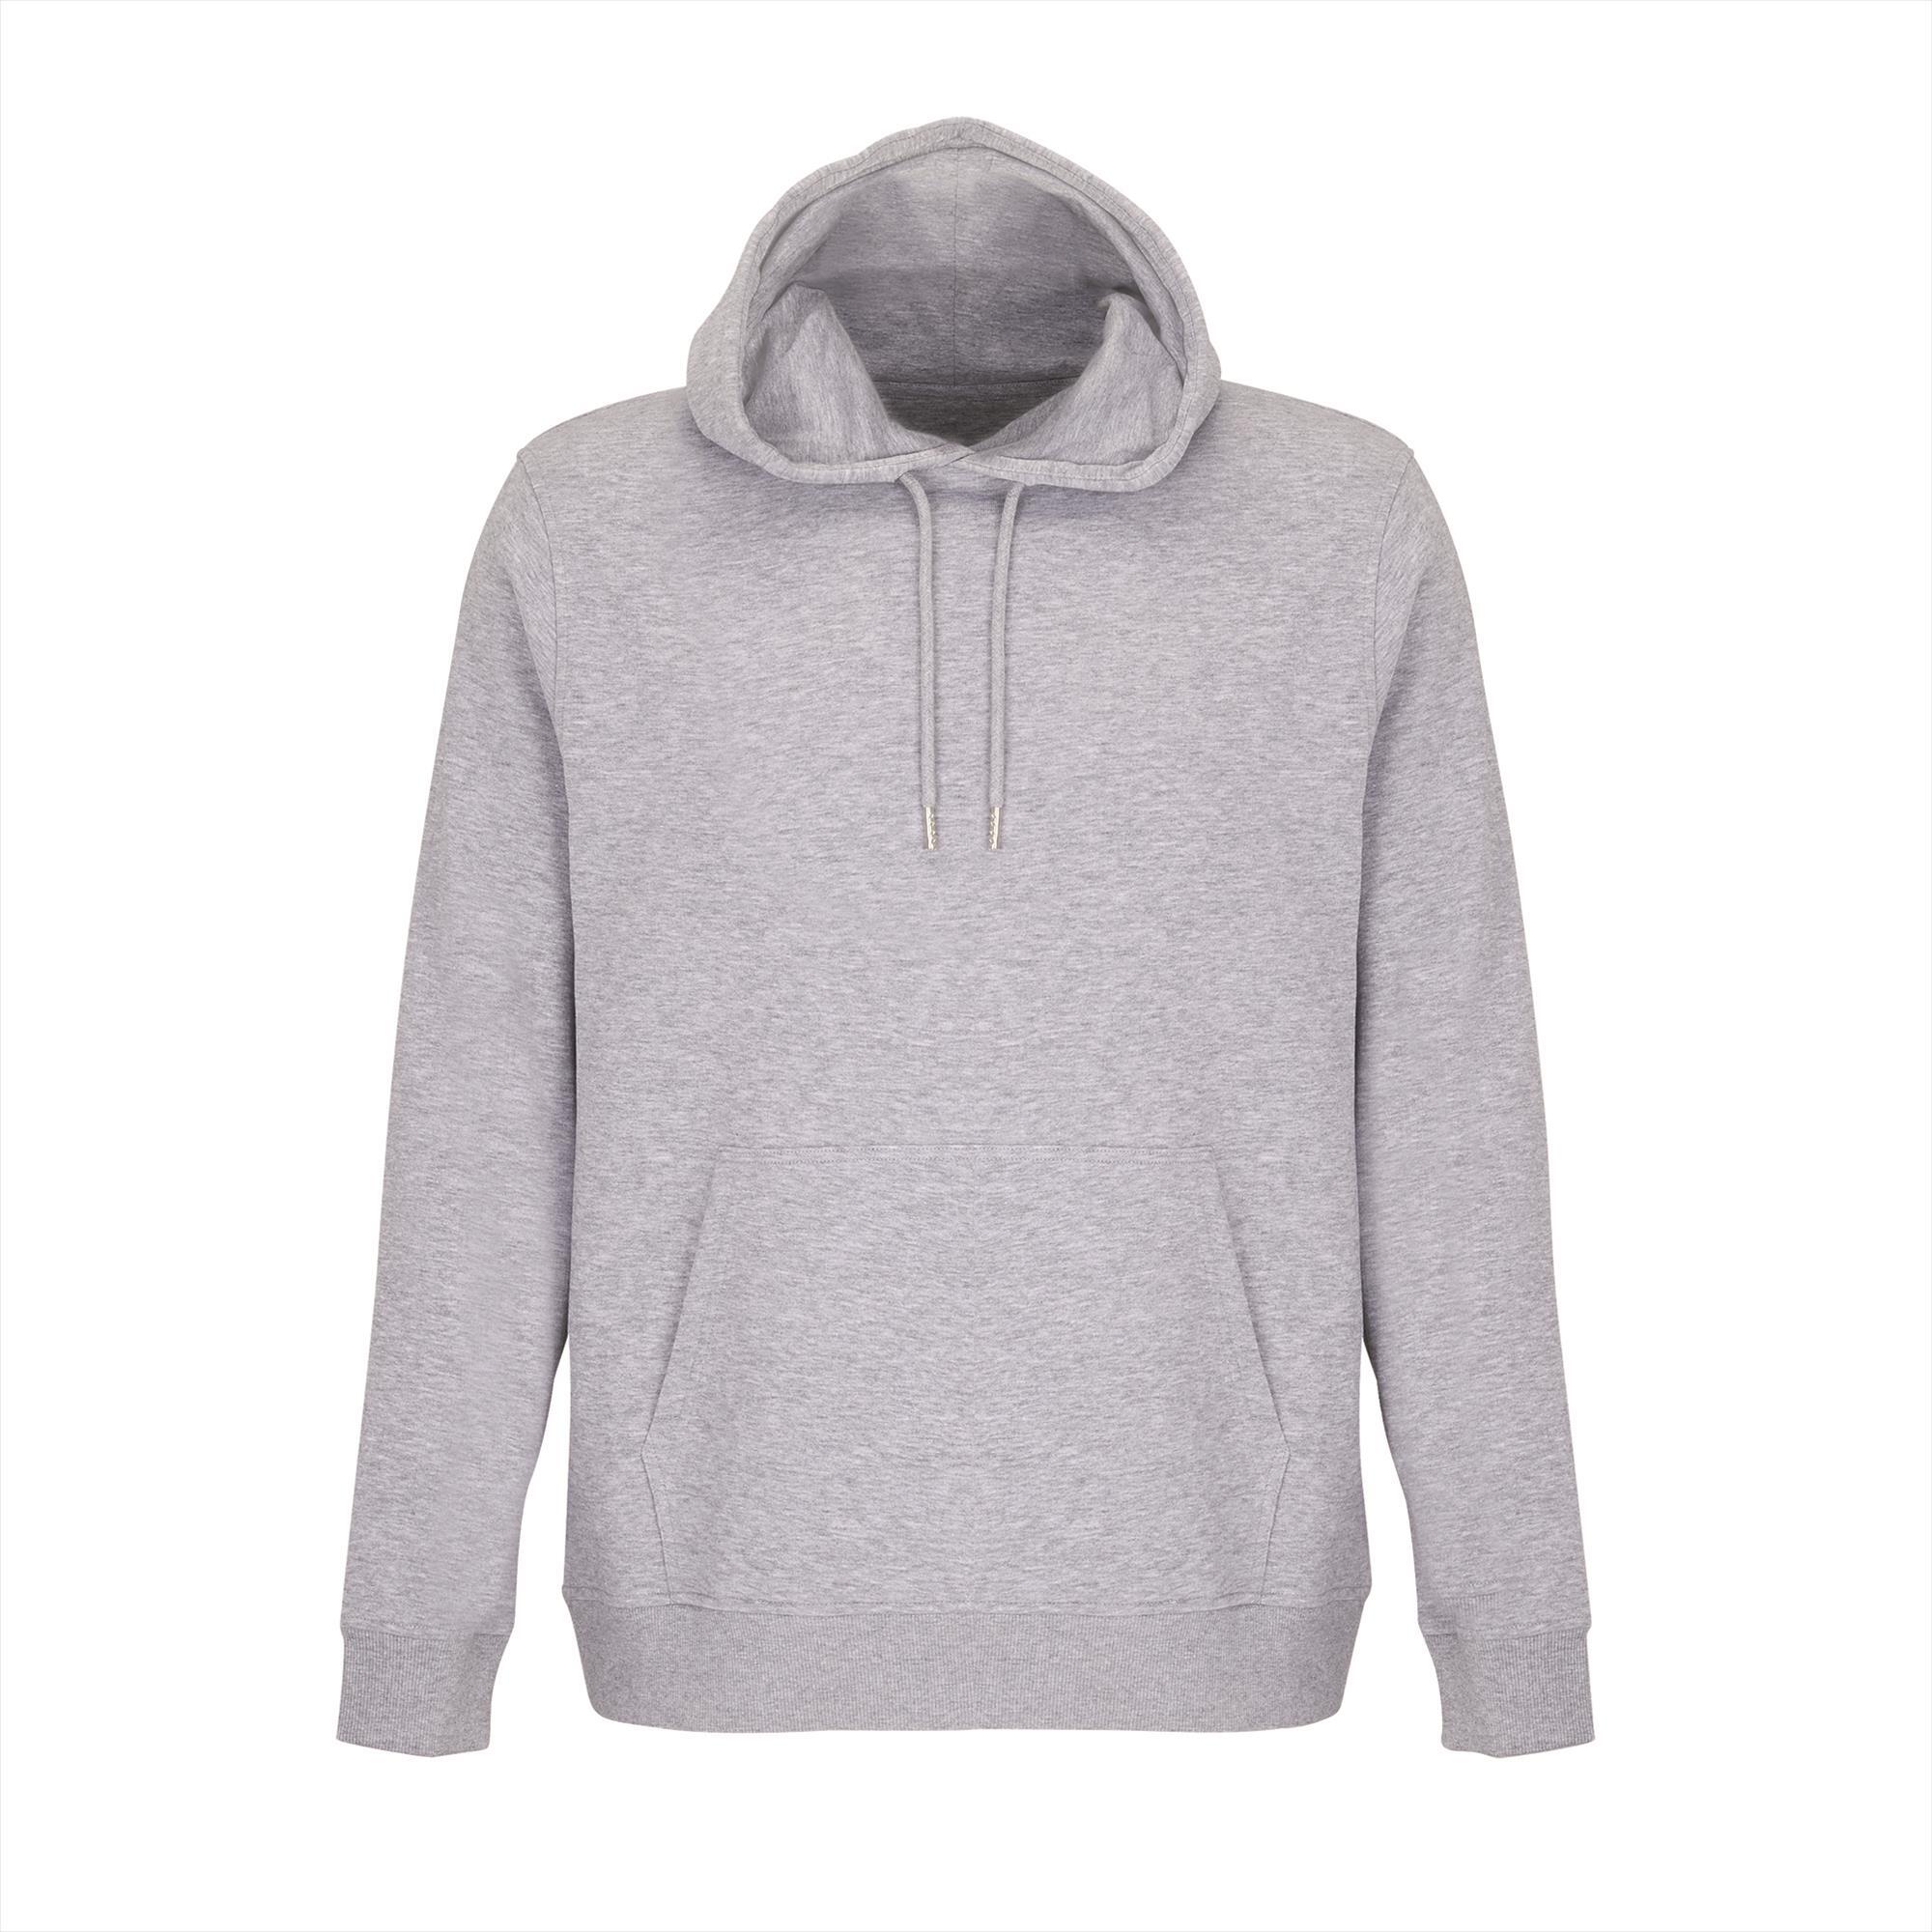 Comfortabele hoodie unisex grijs melange sweater